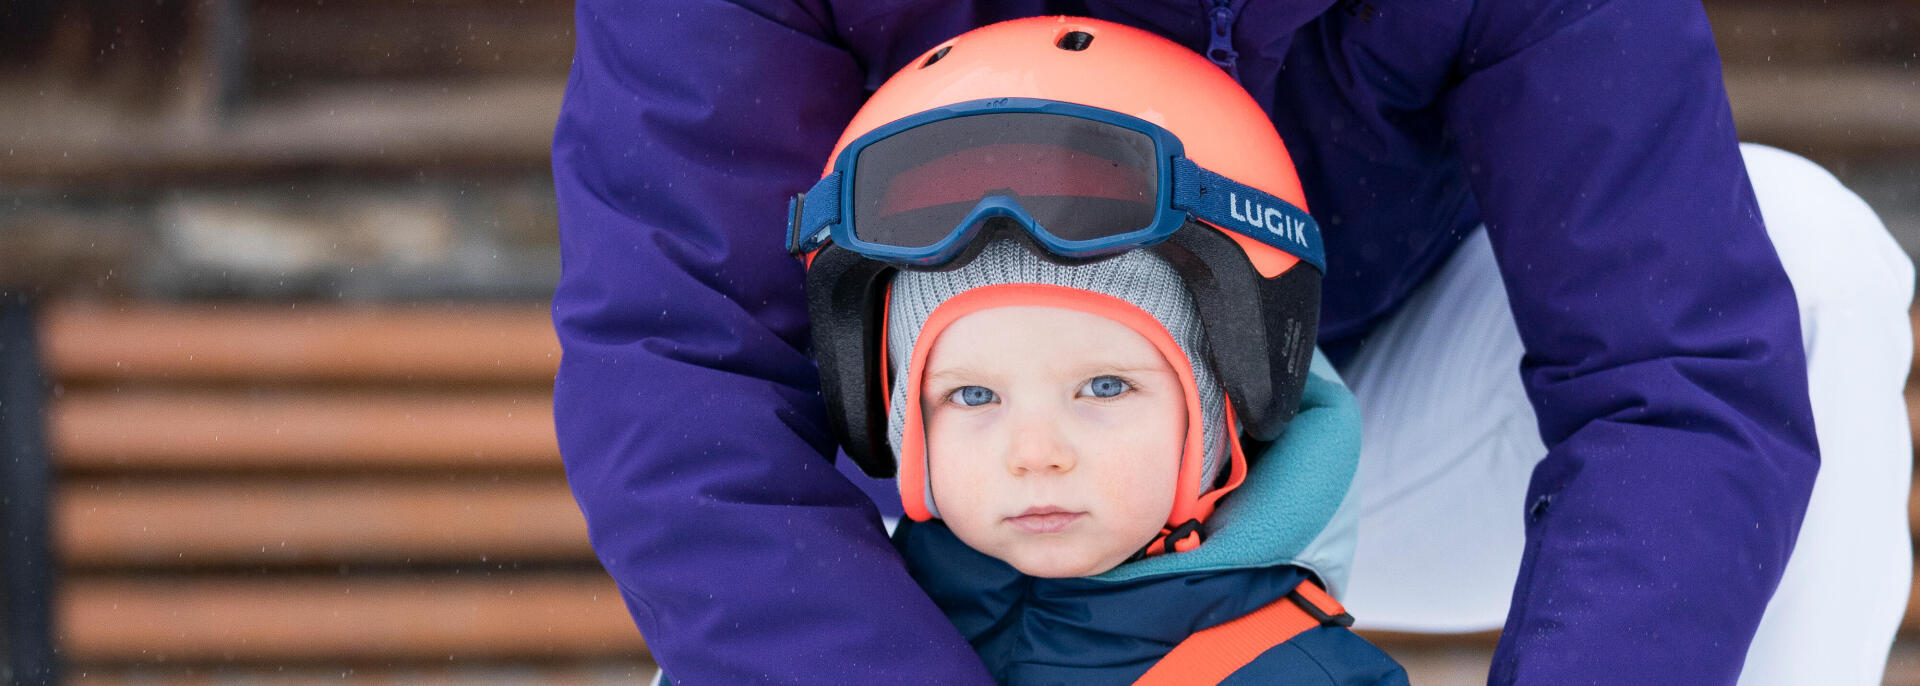 Protéger la peau de son enfant au ski 